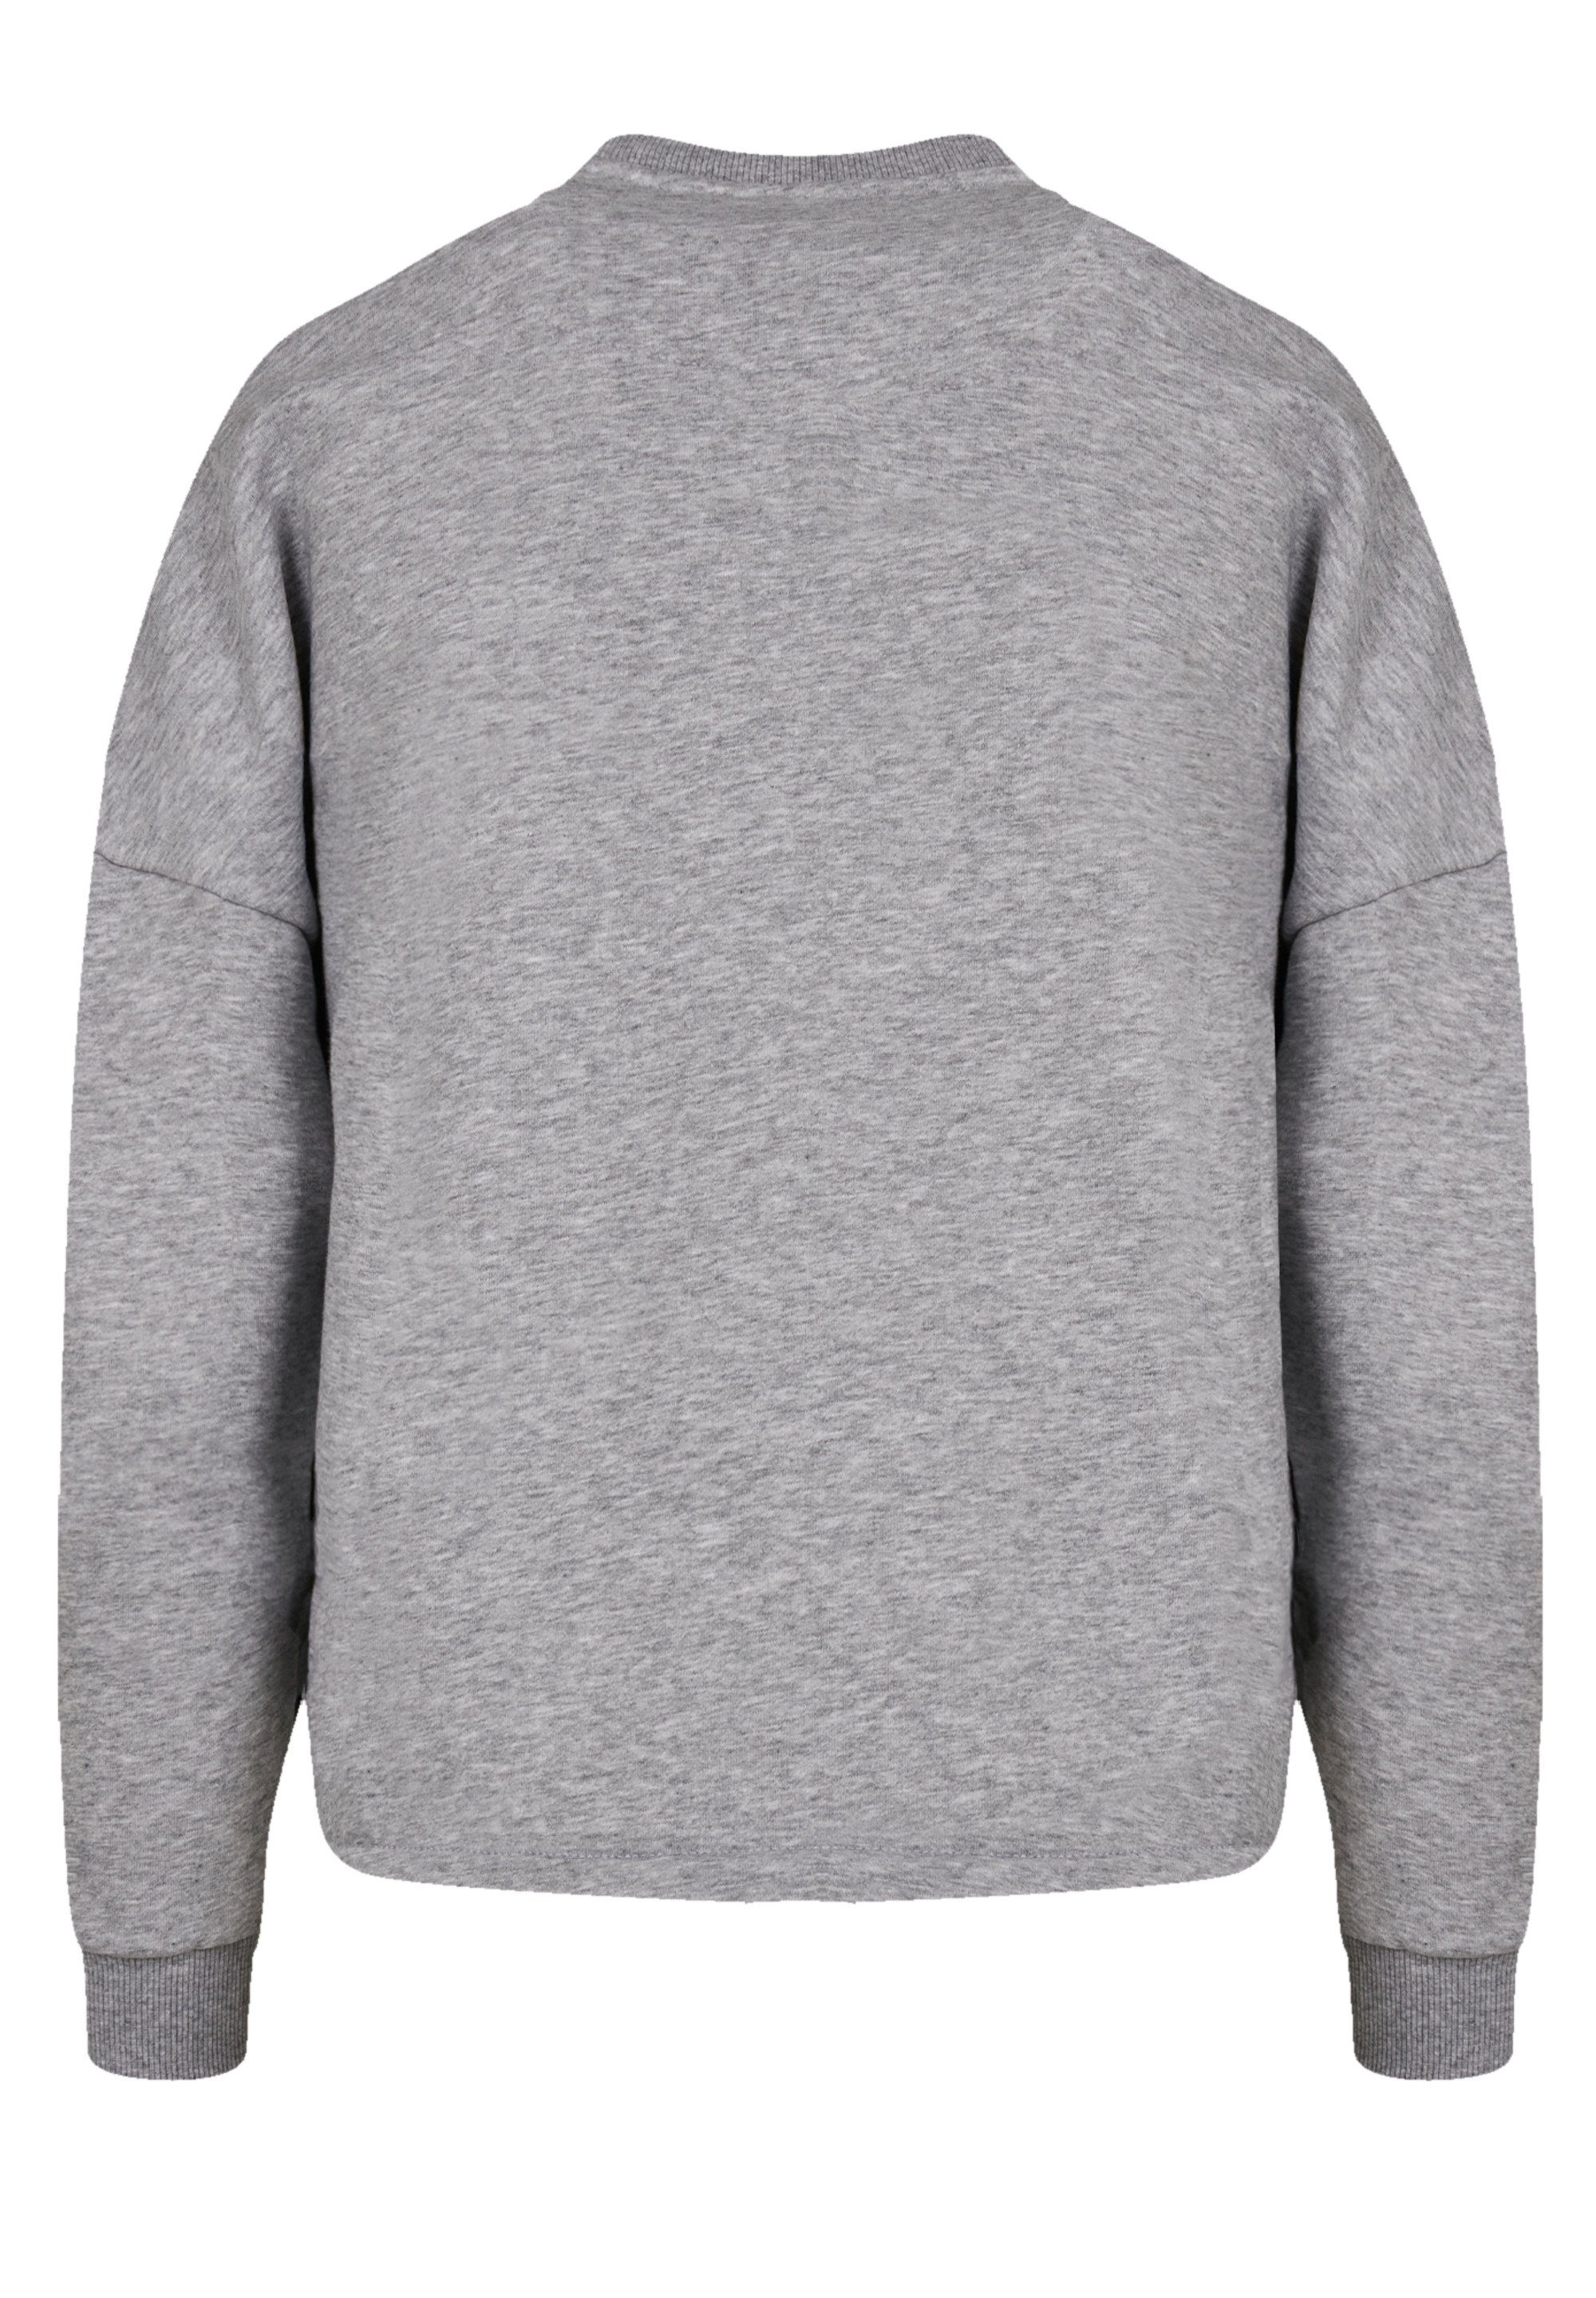 Sweatshirt Schlittenfahren Weihnachten, Weihnachten Christmas Logo heather Geschenk, F4NT4STIC grey